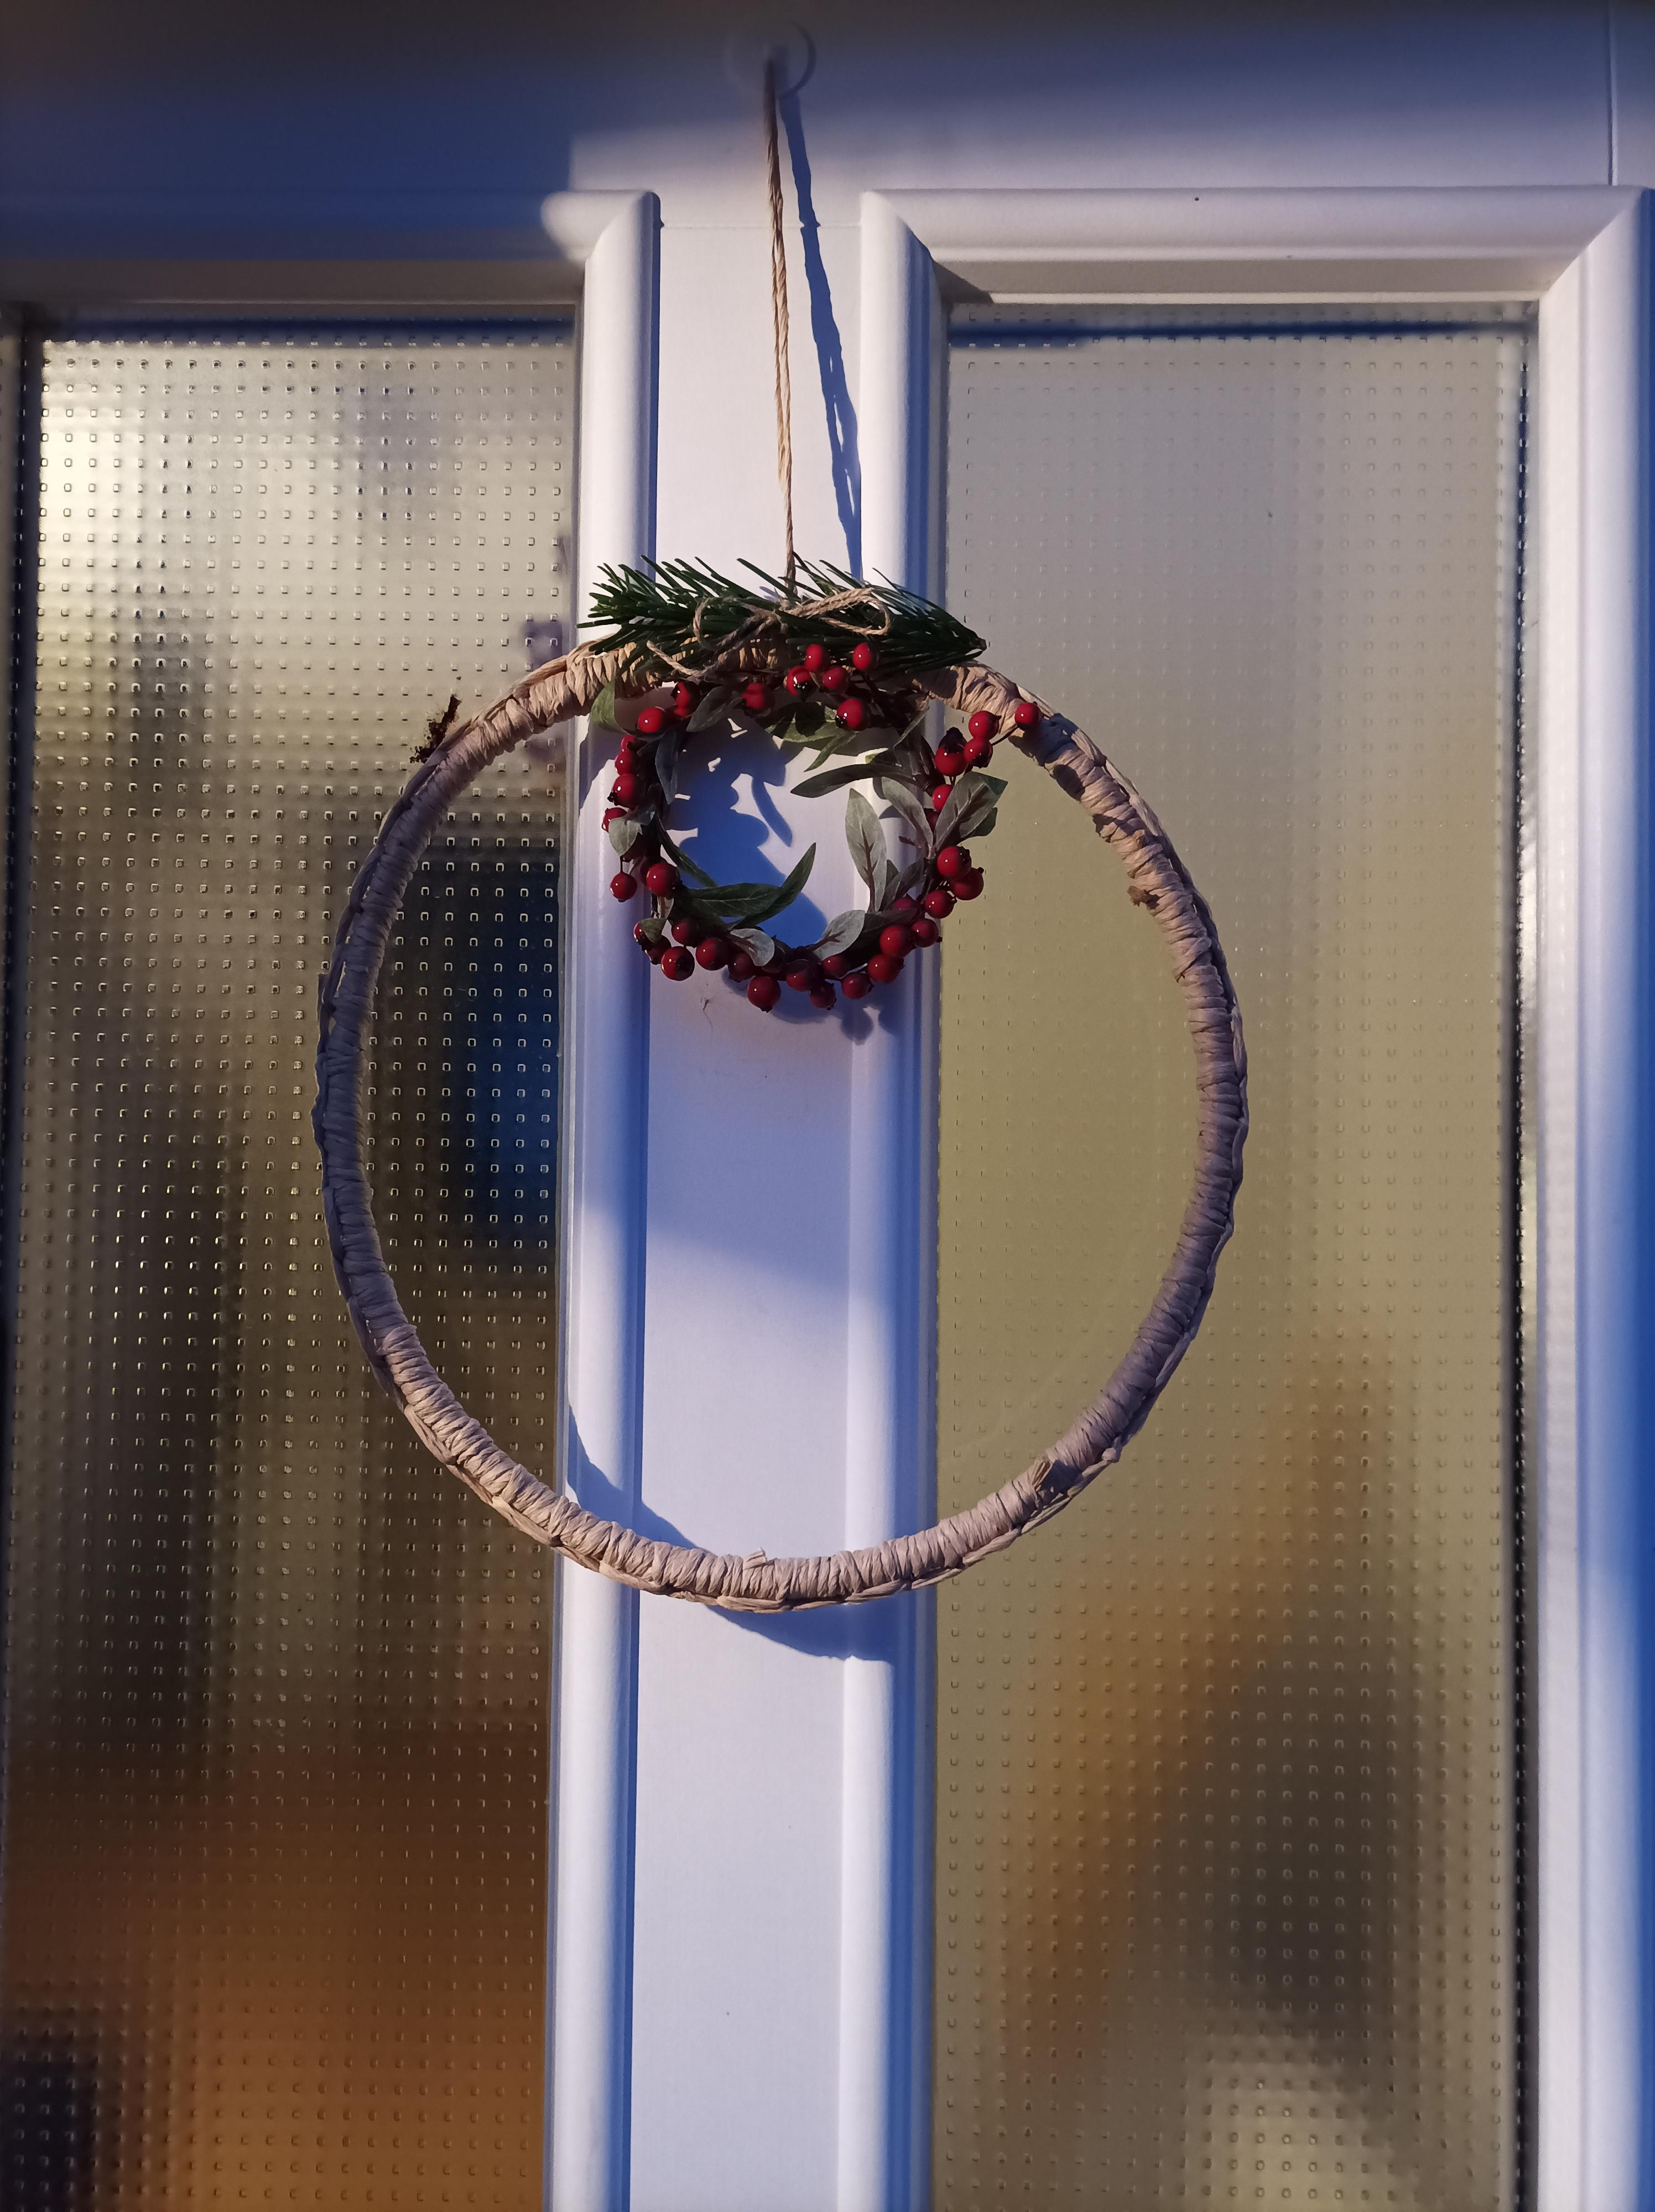 Manchmal ist weniger mehr #vorfreude #godjul #weihnachtsdeko #türkranz #minimalistisch #haustür